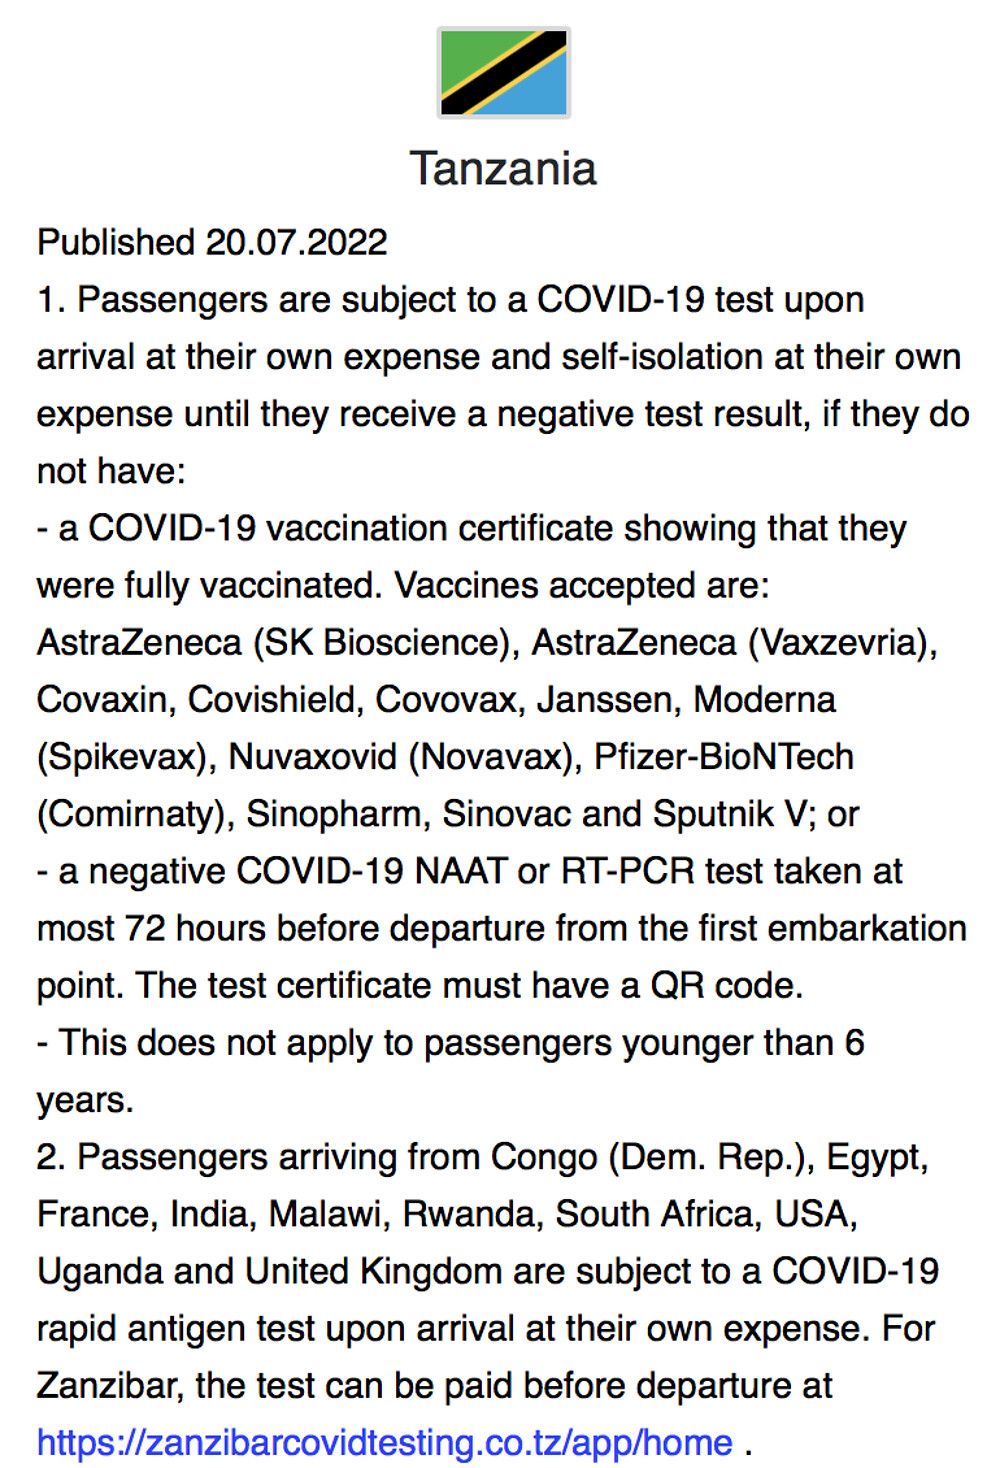 Re: Certificat de vaccination valide avec QR code en Tanzanie - Paris12eme